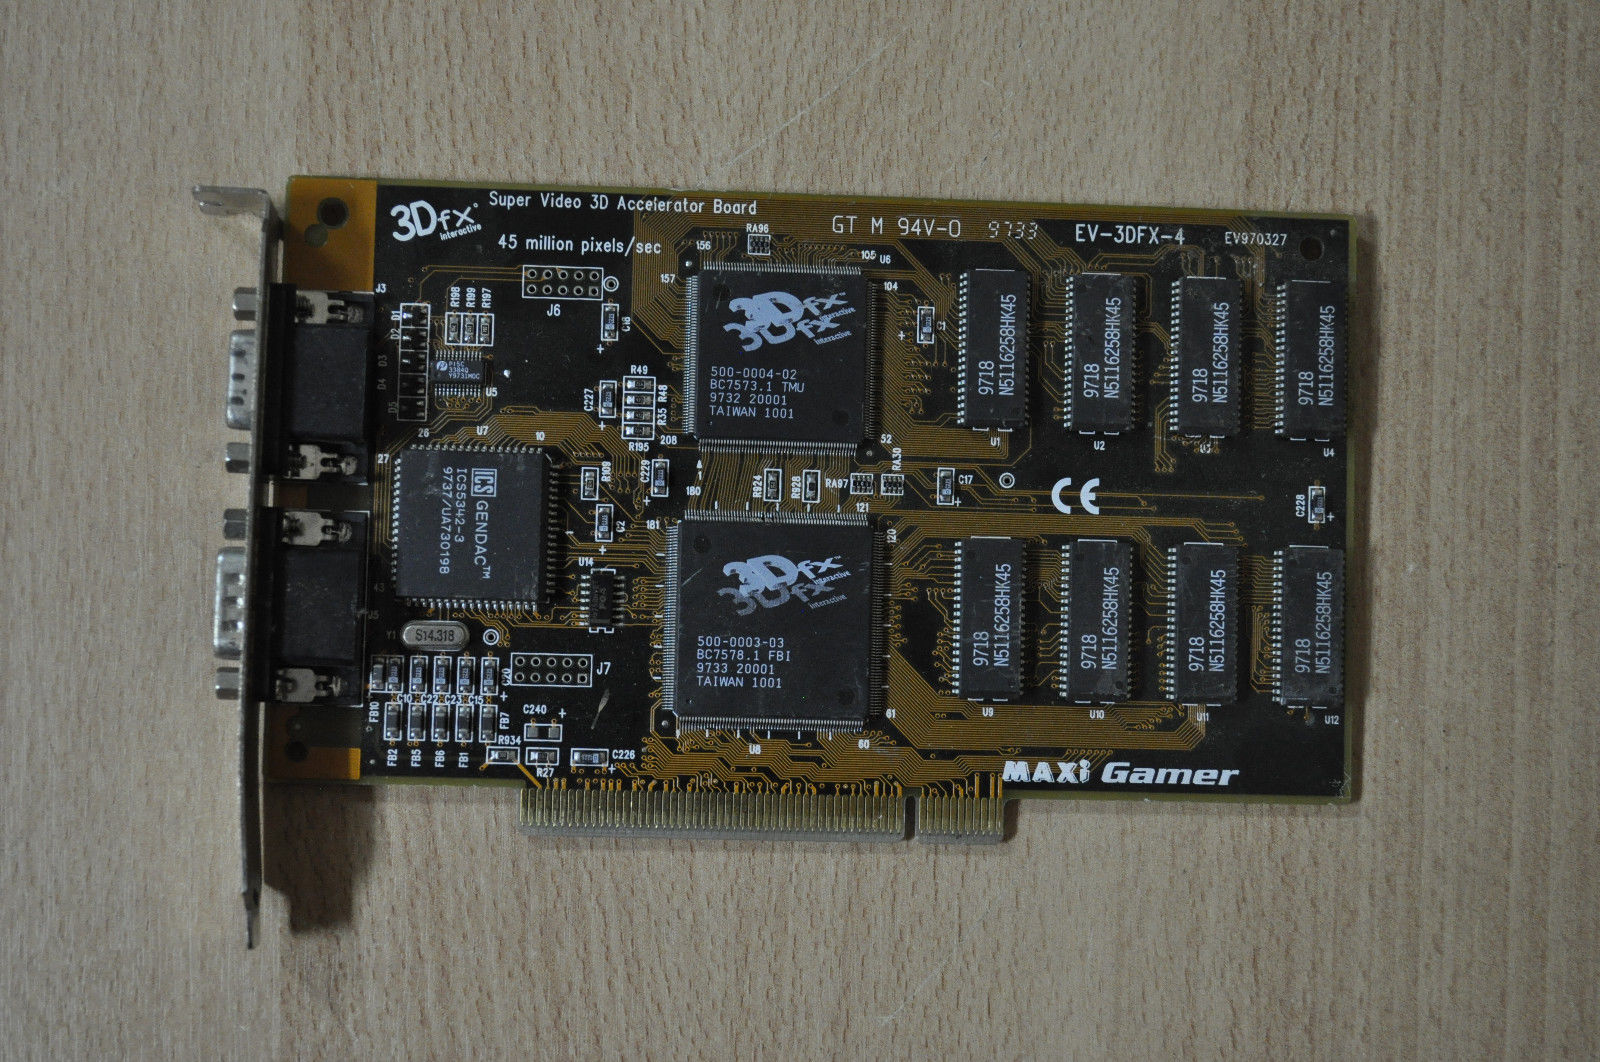 VooDoo Maxi Gamer EV-3DFX-4 4MB 3Dfx Super Video 3D Accelerator Board GT M  94V-0